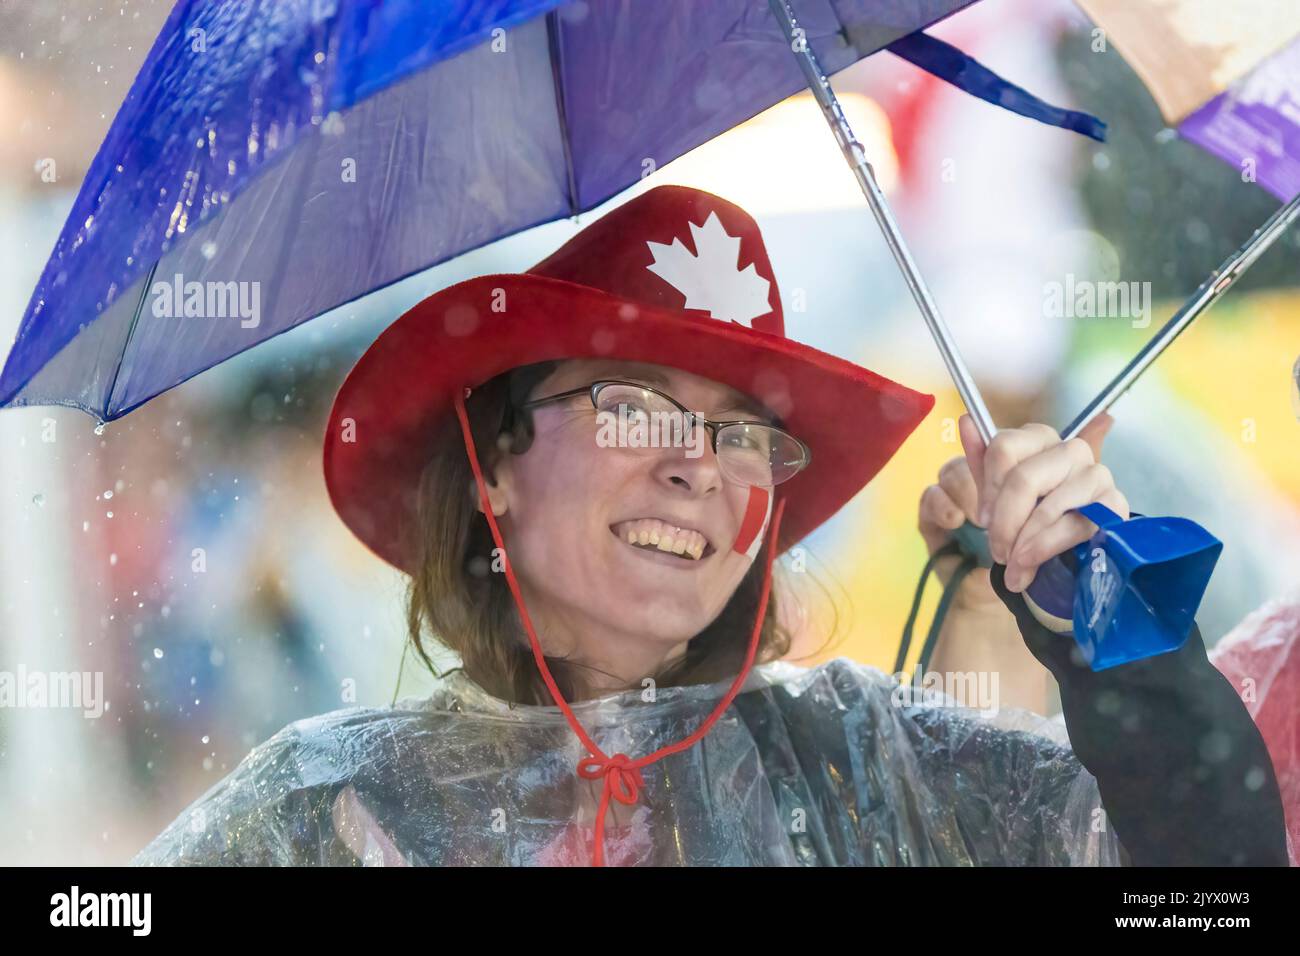 Femme souriante avec un chapeau canadien. Il pleut dans le stade Athlétique des Jeux panaméricains de Toronto, Canada, 2015 Banque D'Images